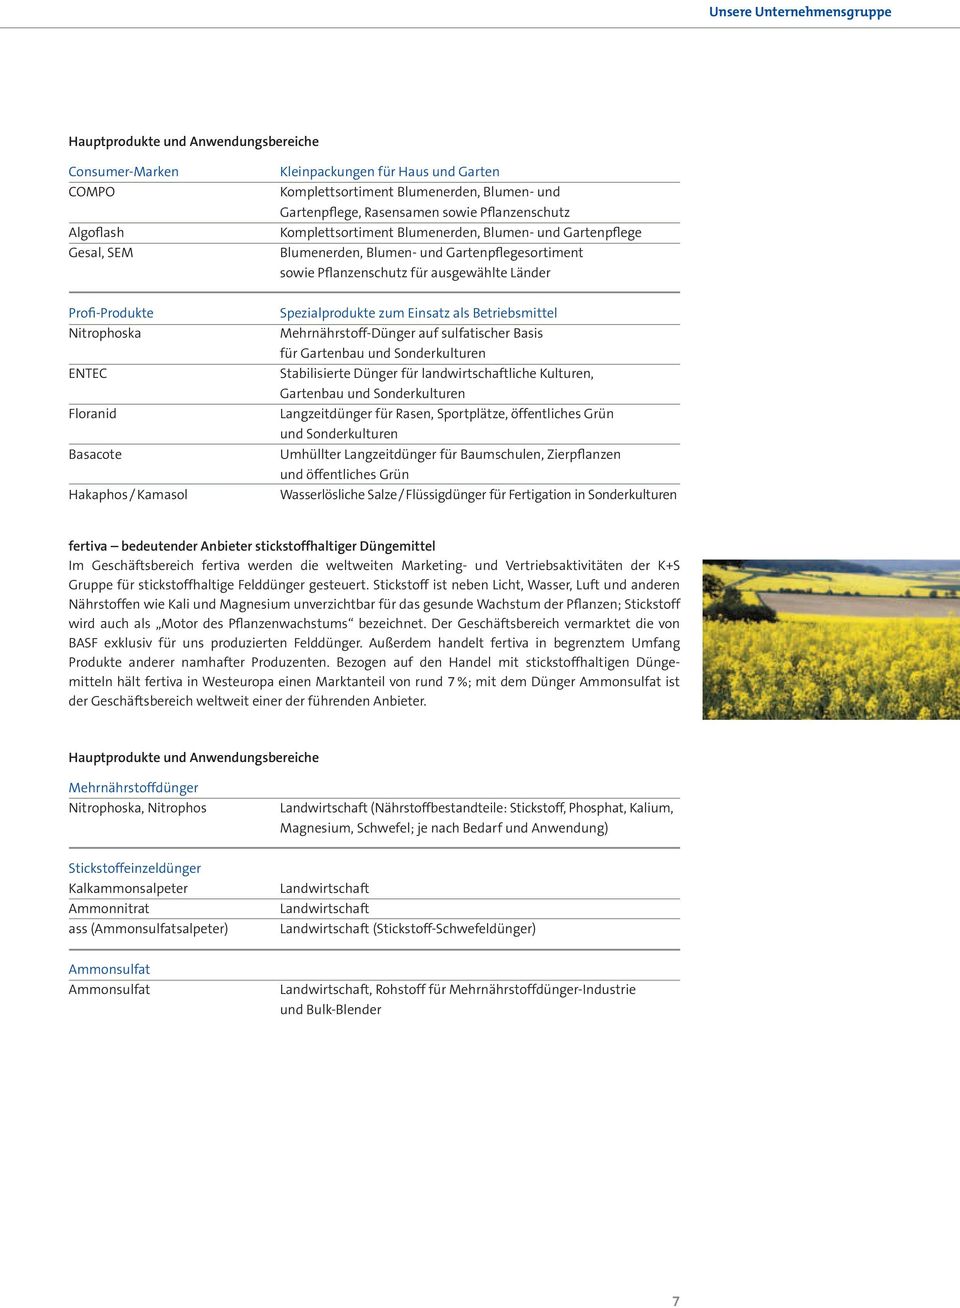 Nitrophoska ENTEC Floranid Basacote Hakaphos / Kamasol Spezialprodukte zum Einsatz als Betriebsmittel Mehrnährstoff-Dünger auf sulfatischer Basis für Gartenbau und Sonderkulturen Stabilisierte Dünger